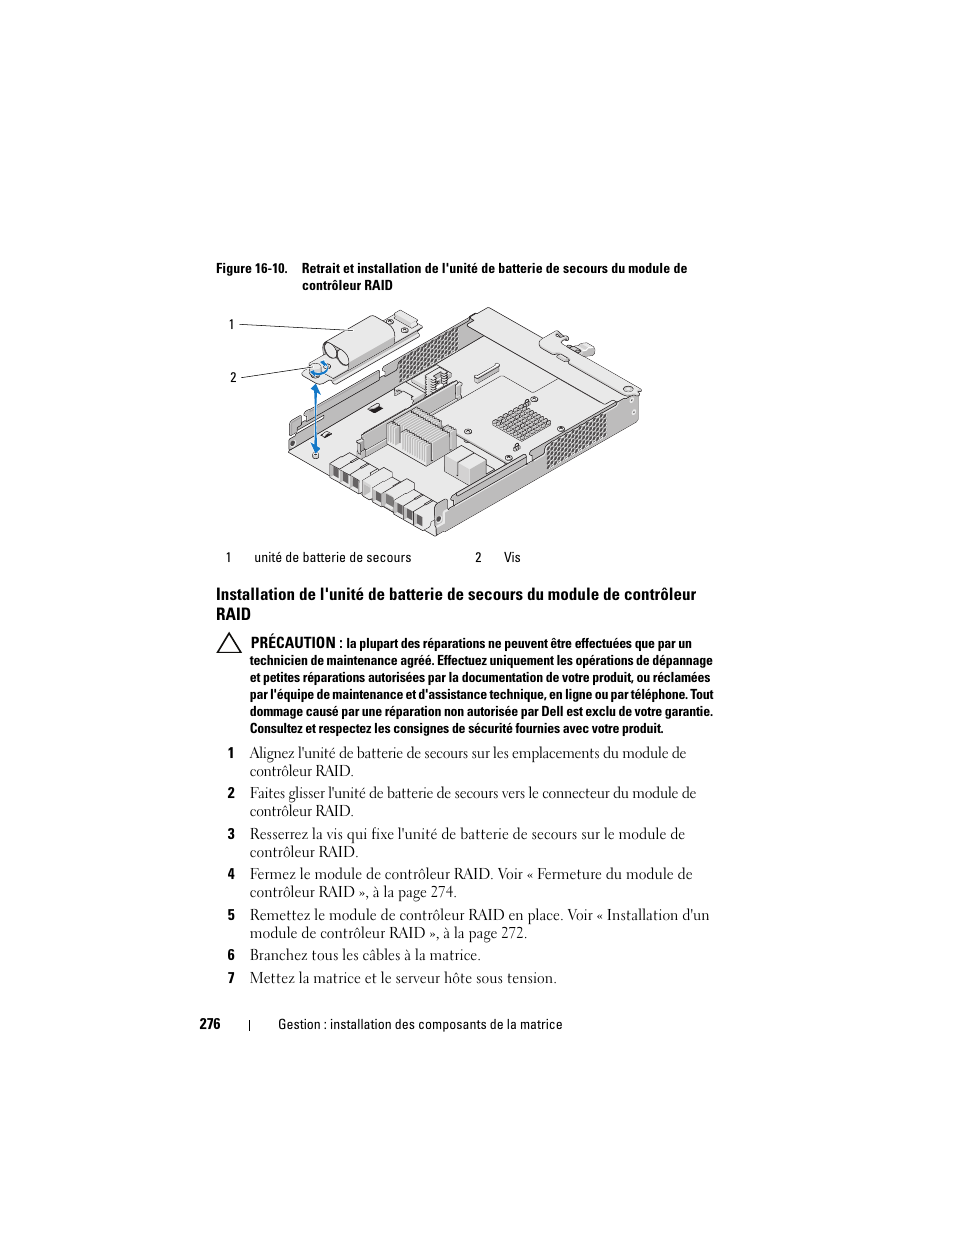 Installation de l'unité de batterie de secours du, Module de contrôleur raid, Ir la figure 16-10 | Figure 16-10 | Dell POWERVAULT MD3600F Manuel d'utilisation | Page 276 / 344